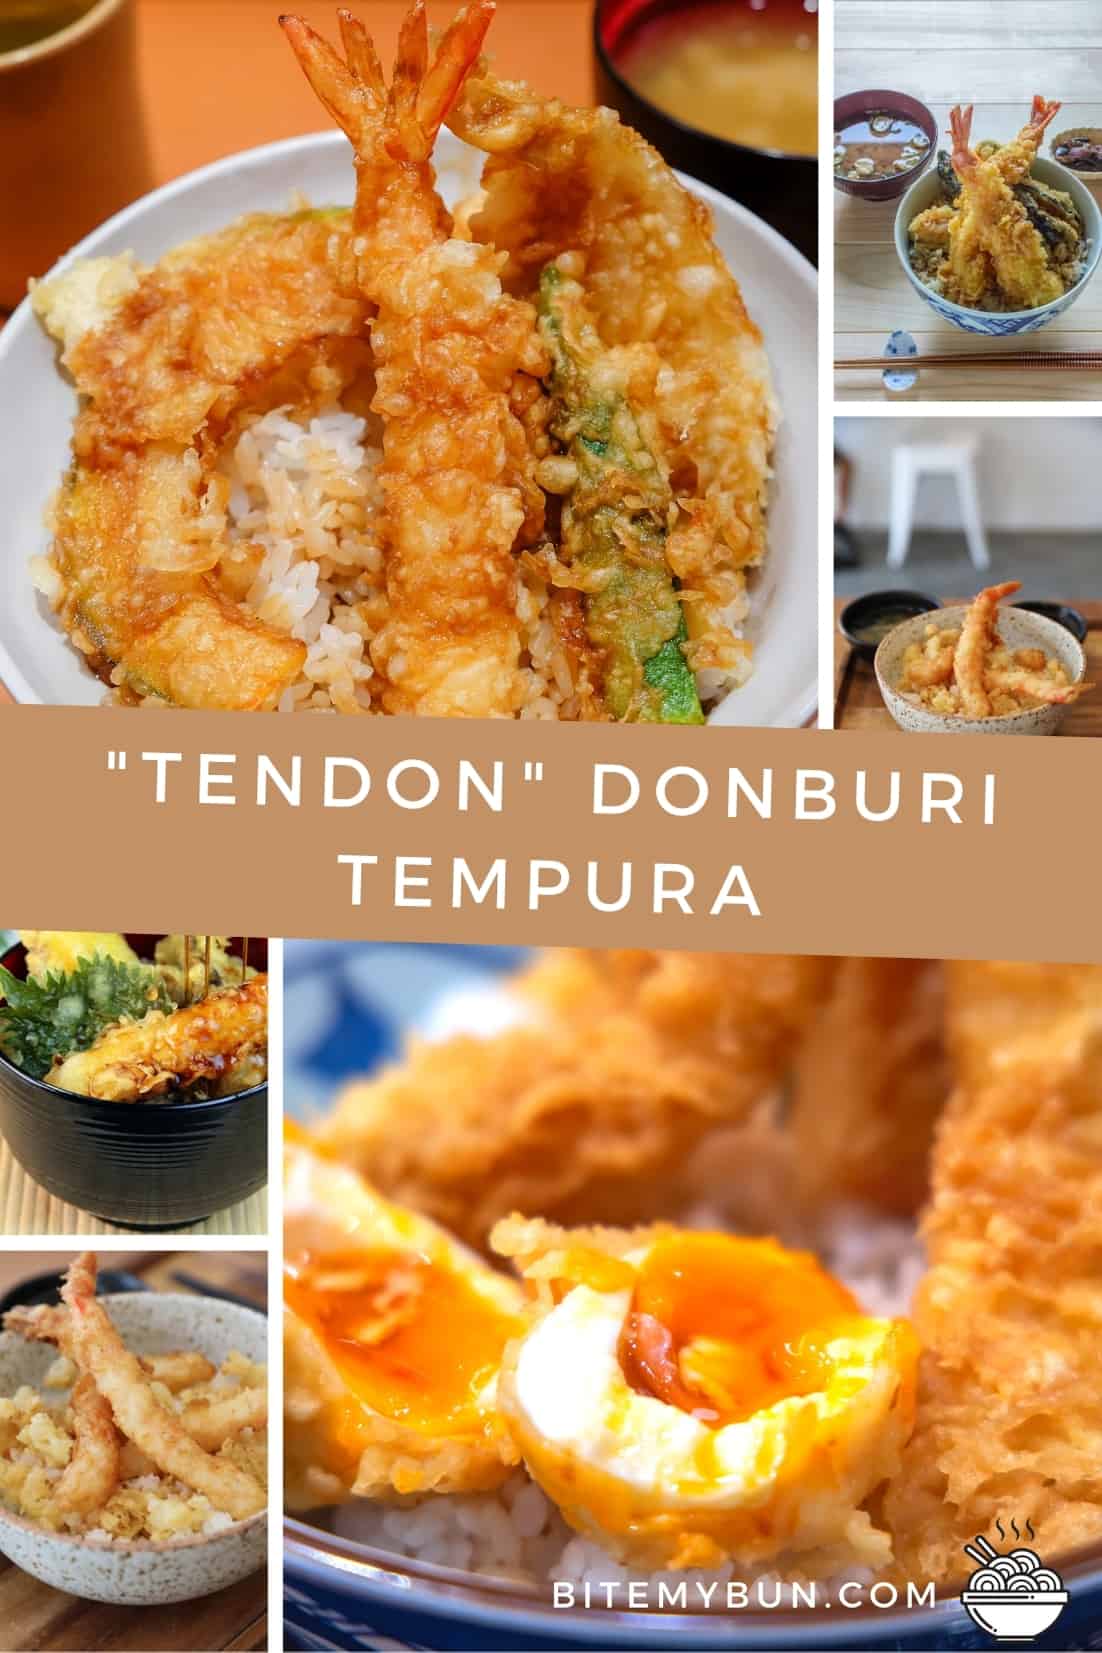 Tendon tempura karides qabları